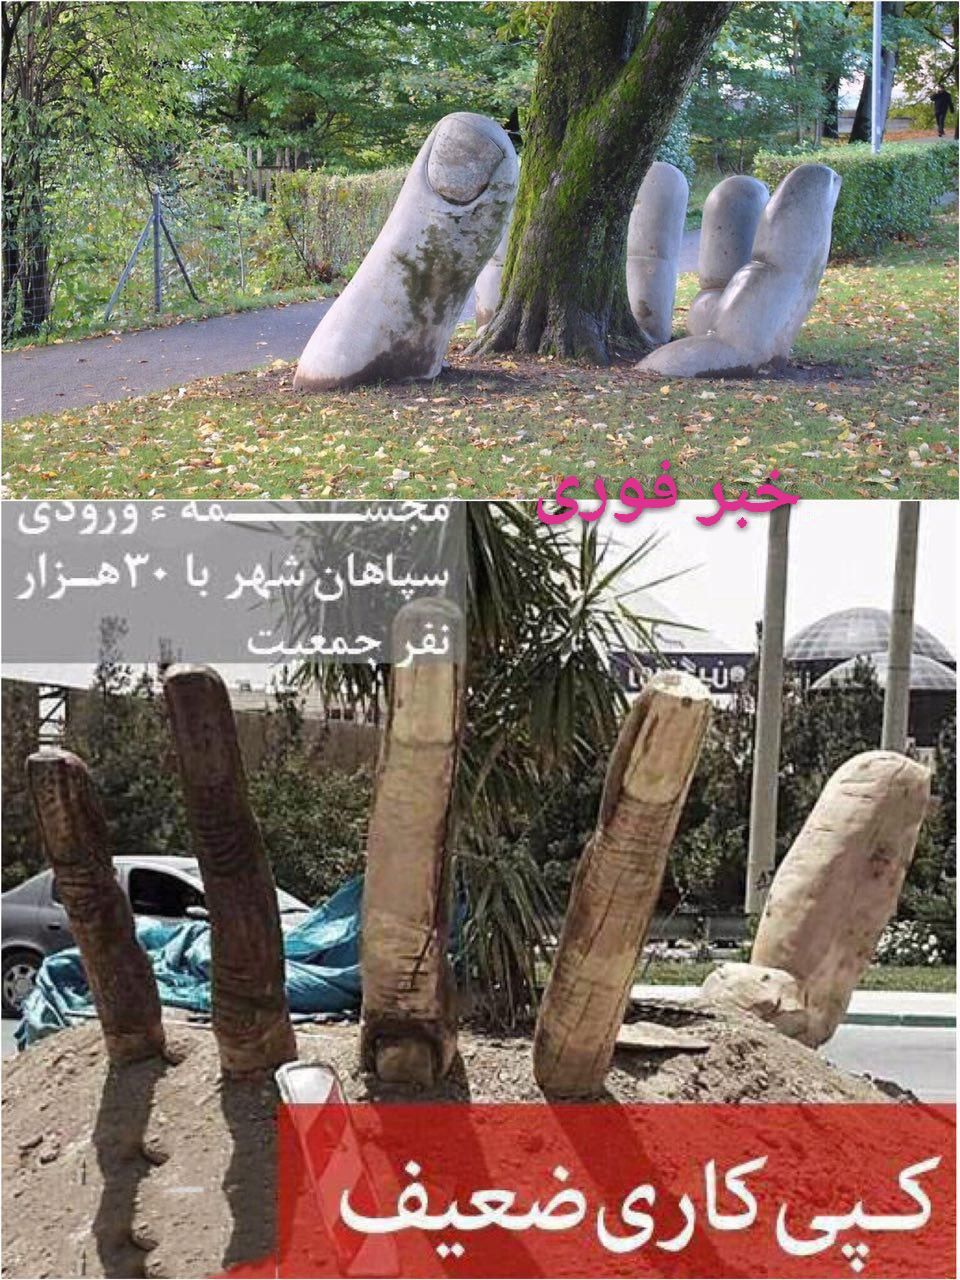 حرکتی زیبا در سوییس برای حفاظت از محیط زیست و کپی برداری ضعیف در اصفهان ! تصویر بالا مربوط به مجسمه 